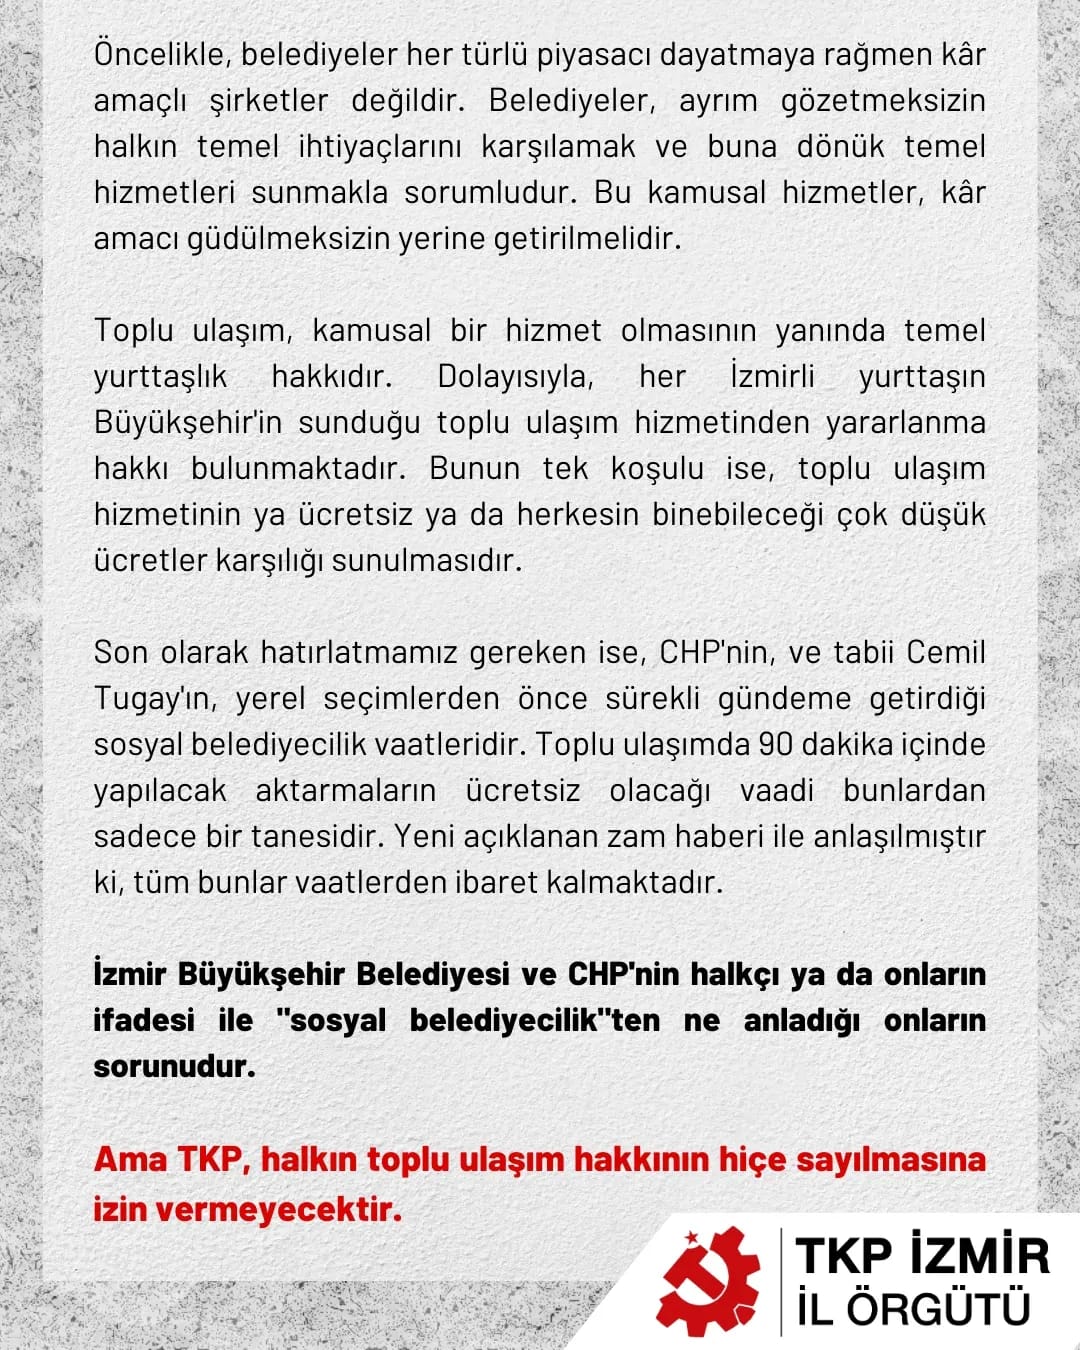 TKP İzmir İl Örgütü'nden yapılan resmi açıklama şu şekilde: 